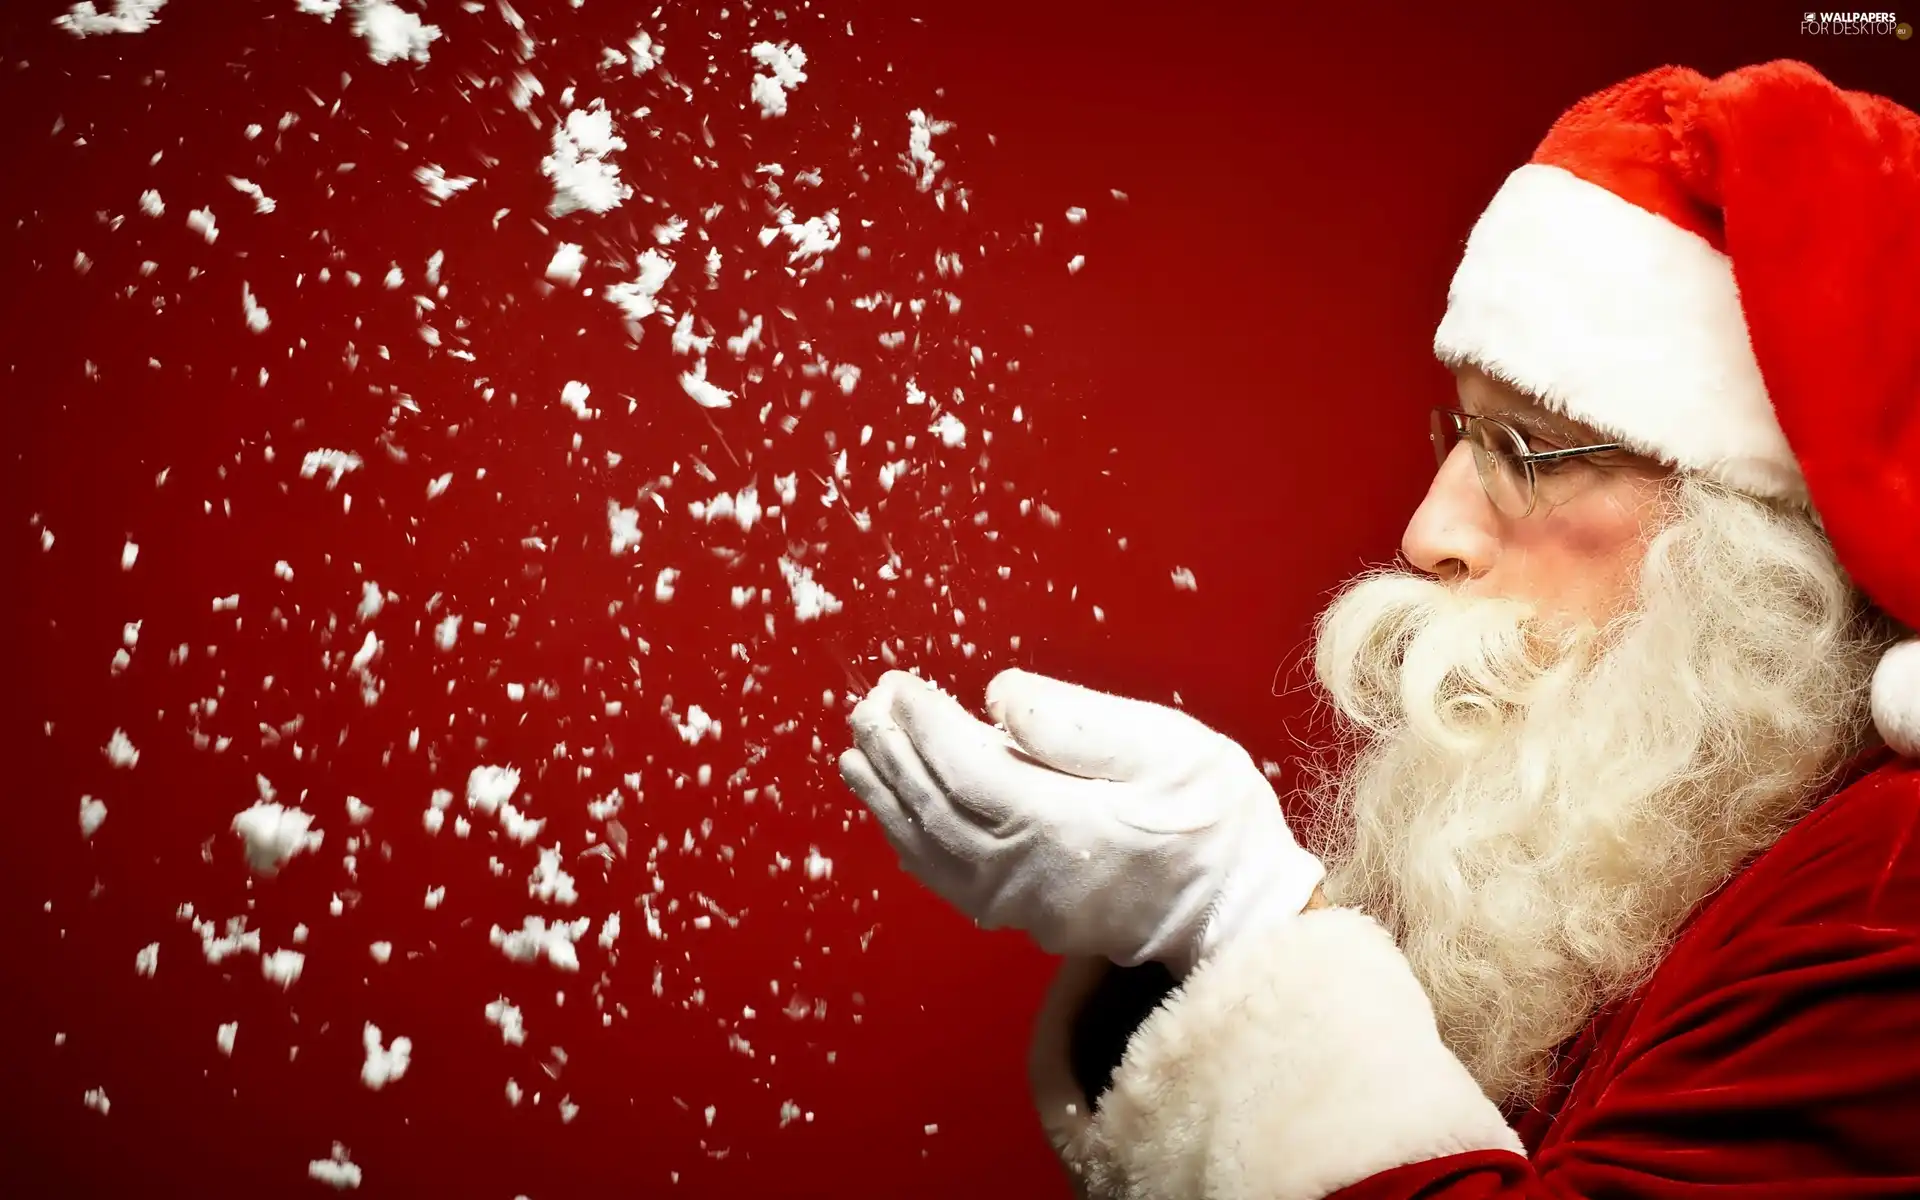 snow, Santa, flakes